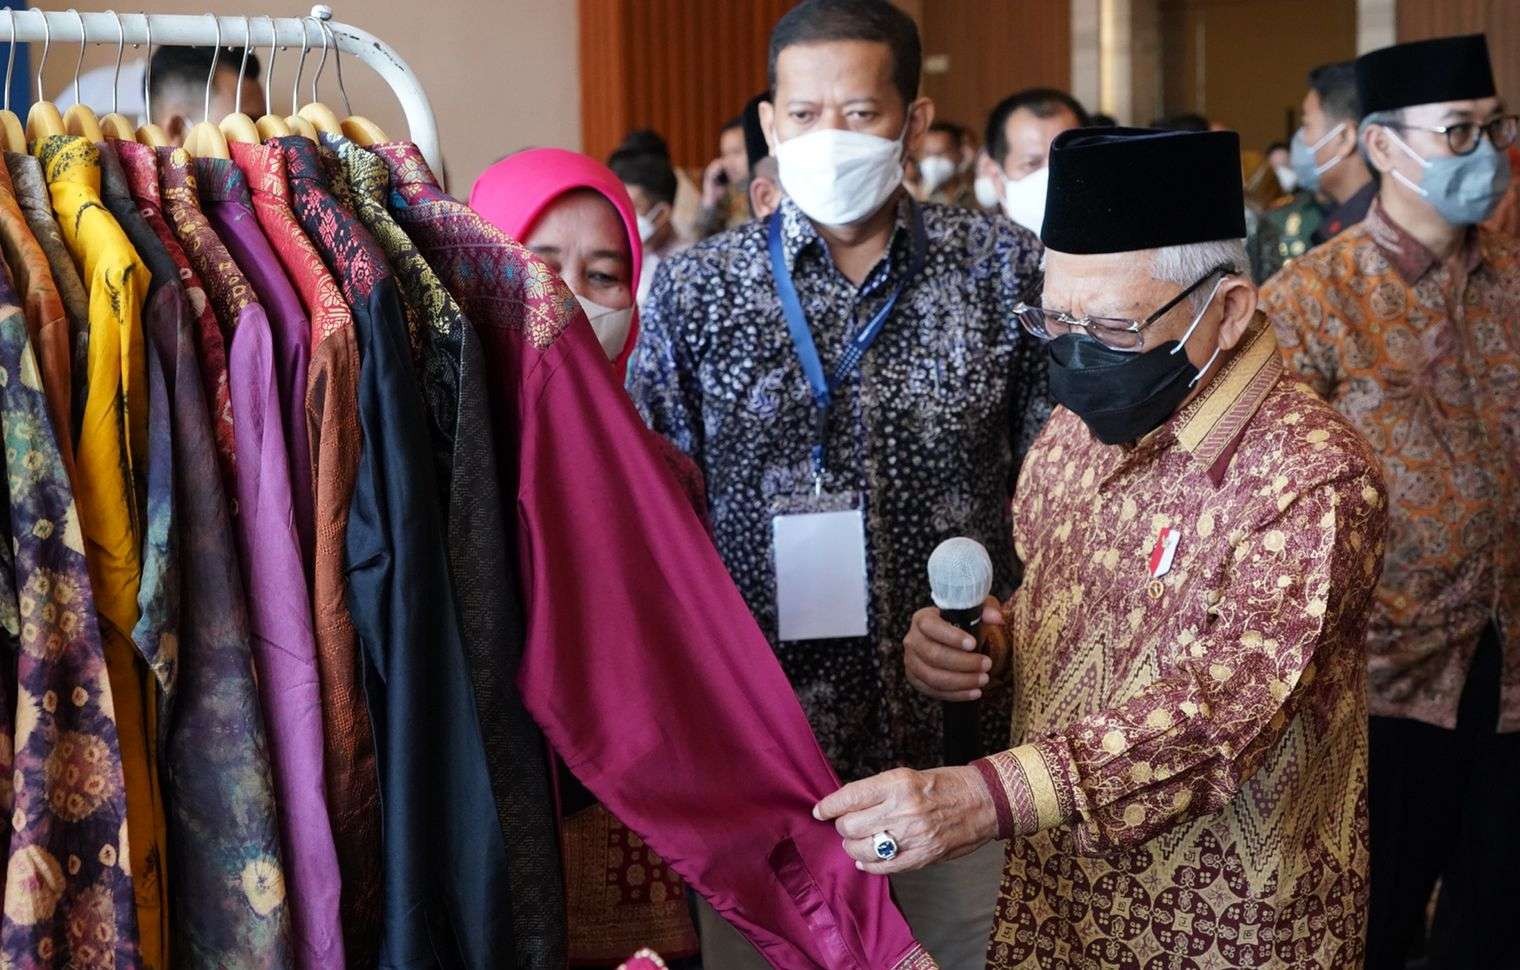 Wakil Presiden (Wapres) Ma’ruf Amin di salah satu stan pameran yang menarik perhatian. Adalah stand perajin tenun tradisional Palembang “Dua Saudara”. (Foto: BPMI Setwapres)